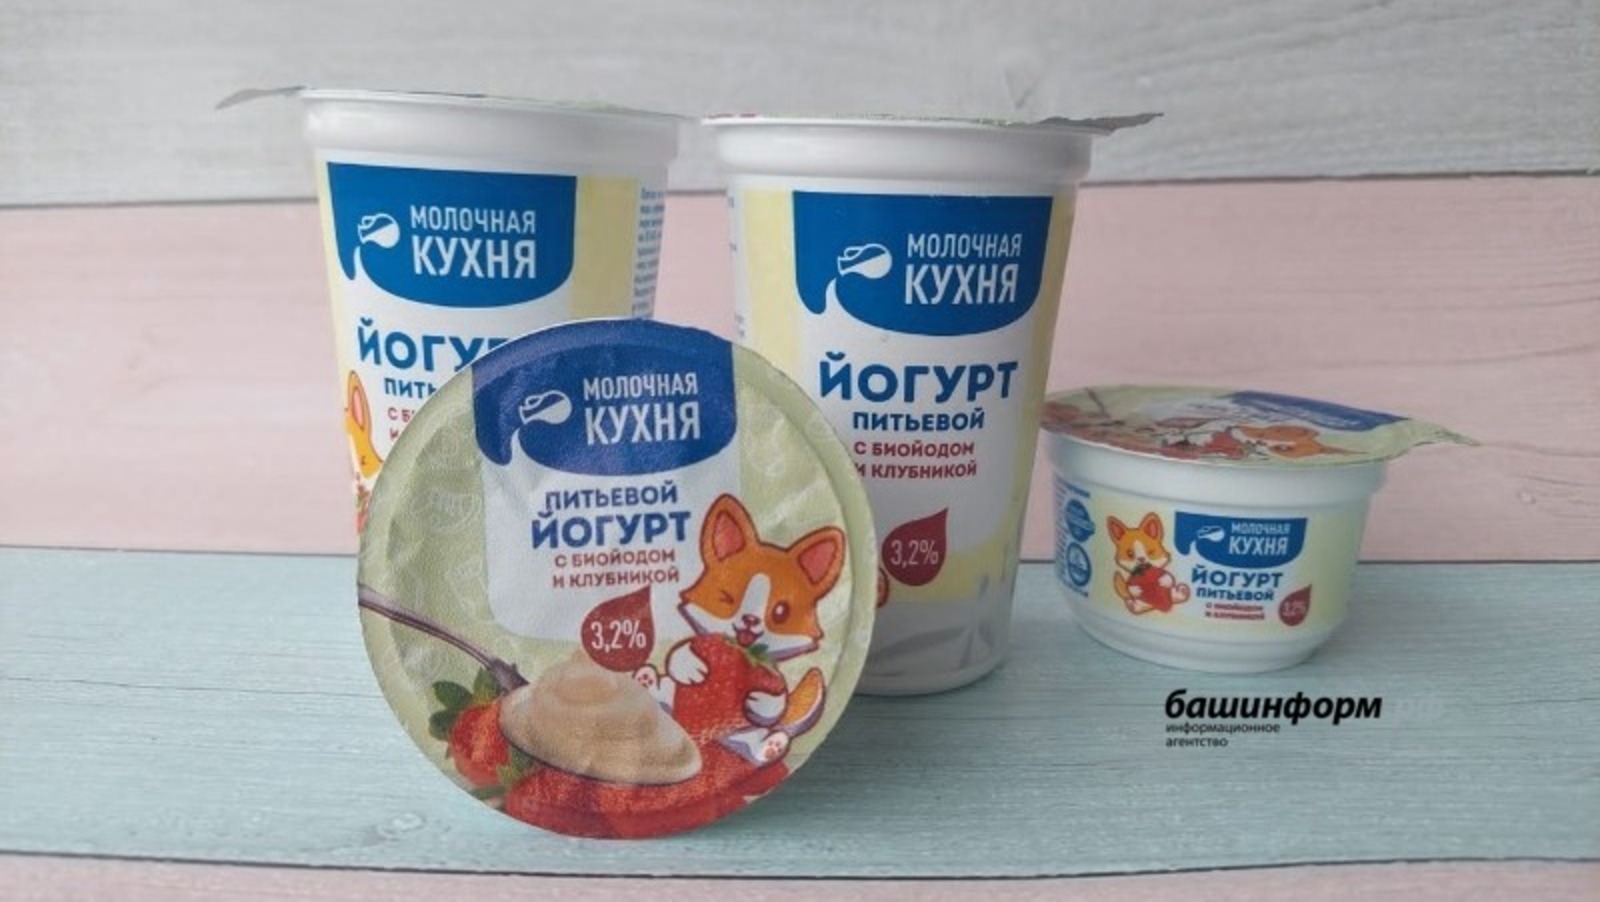 В рационе жителей Башкирии появится йогурт с йодом